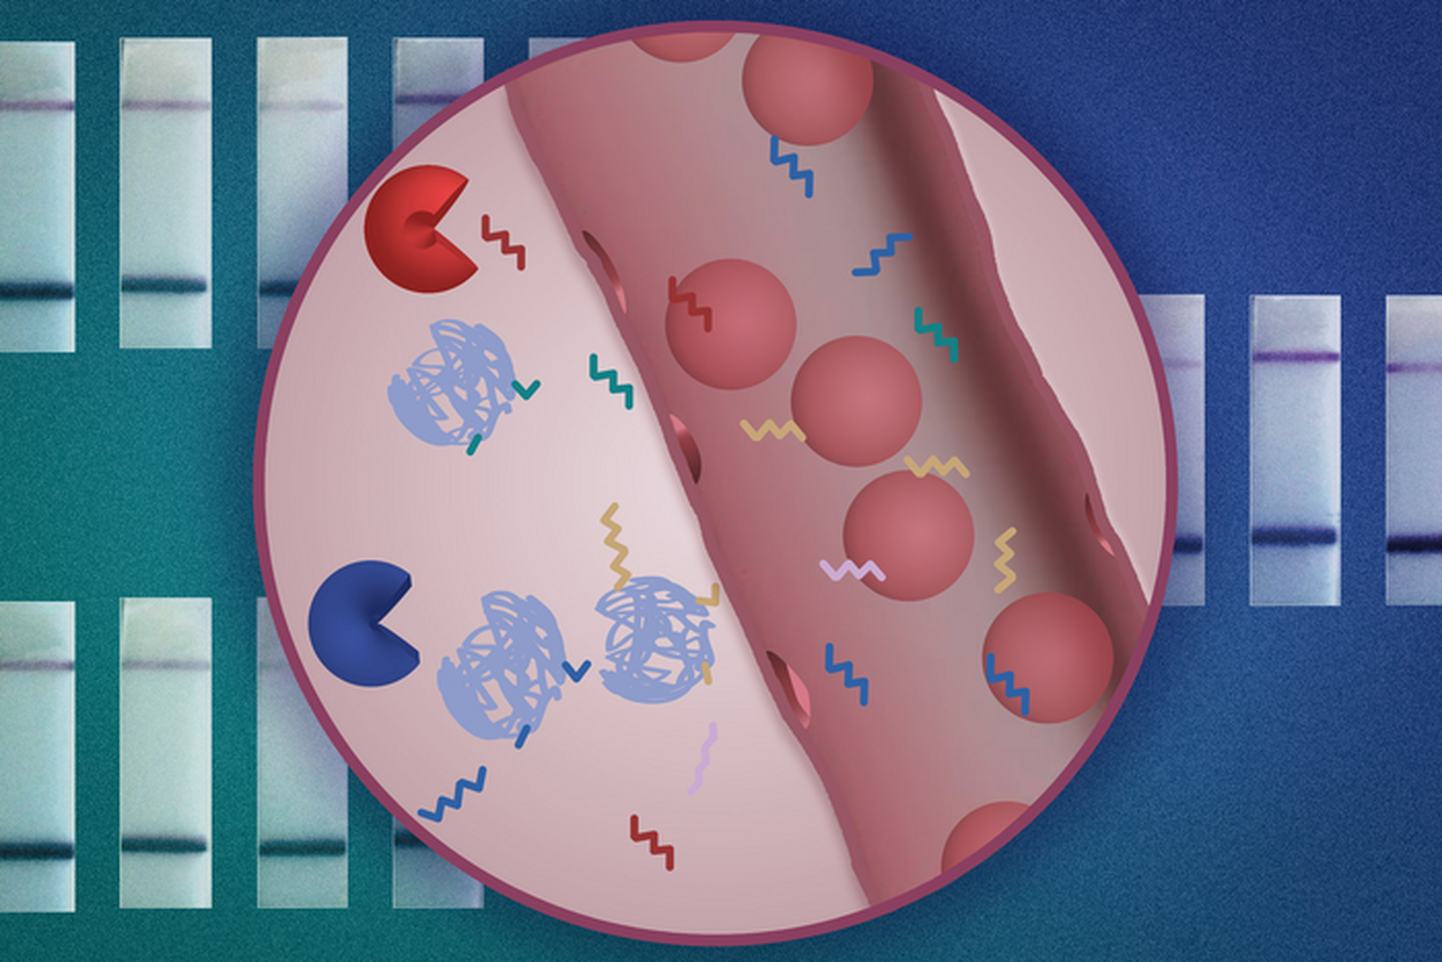 MIT-i insenerid on välja töötanud uue nanoosakeste anduri, mis võimaldab vähktõbe diagnoosida lihtsa uriinianalüüsi abil. Nanoosakesed (sinised) kannavad DNA vöötkoode (siksakilisi jooni), mida võivad lõhustada kehas vähiga seotud proteaasid (pac-mani kujundid). Pärast lõhustumist saab DNA vöötkoode tuvastada uriiniproovist.